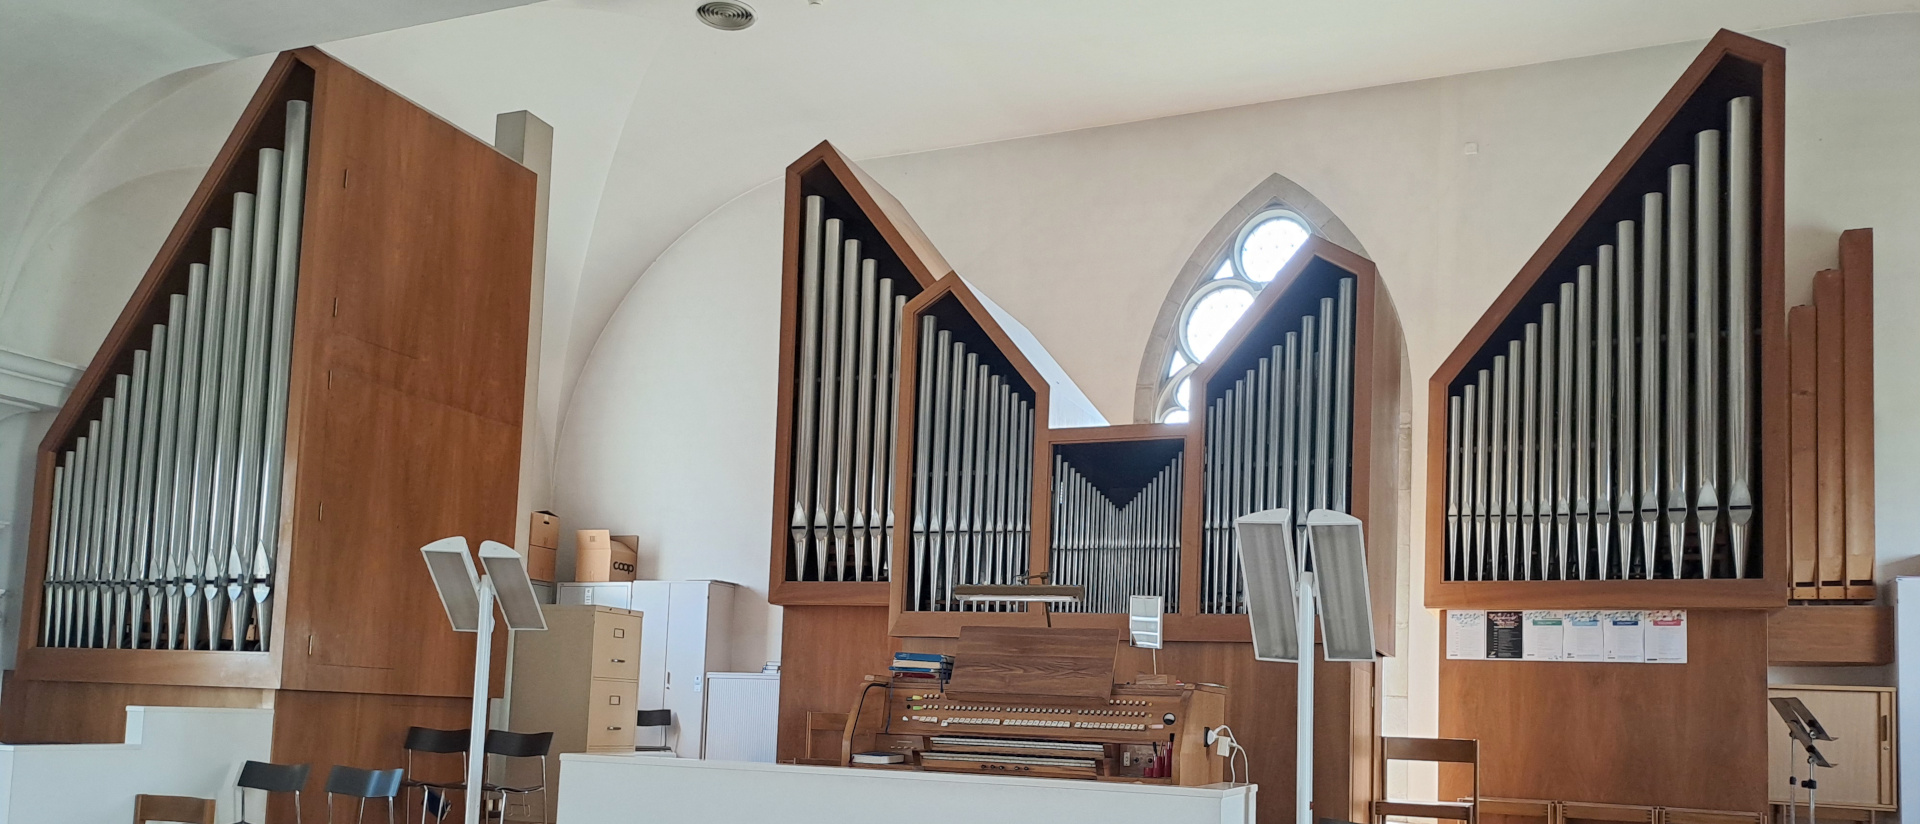 Dies ist die bestehende pneumatische Orgel in der katholischen Pfarrkirche St. Martin in Baar. Sie wurde von 1961 bis 1963 von der Firma Mathis & Co. in Näfels eingebaut.